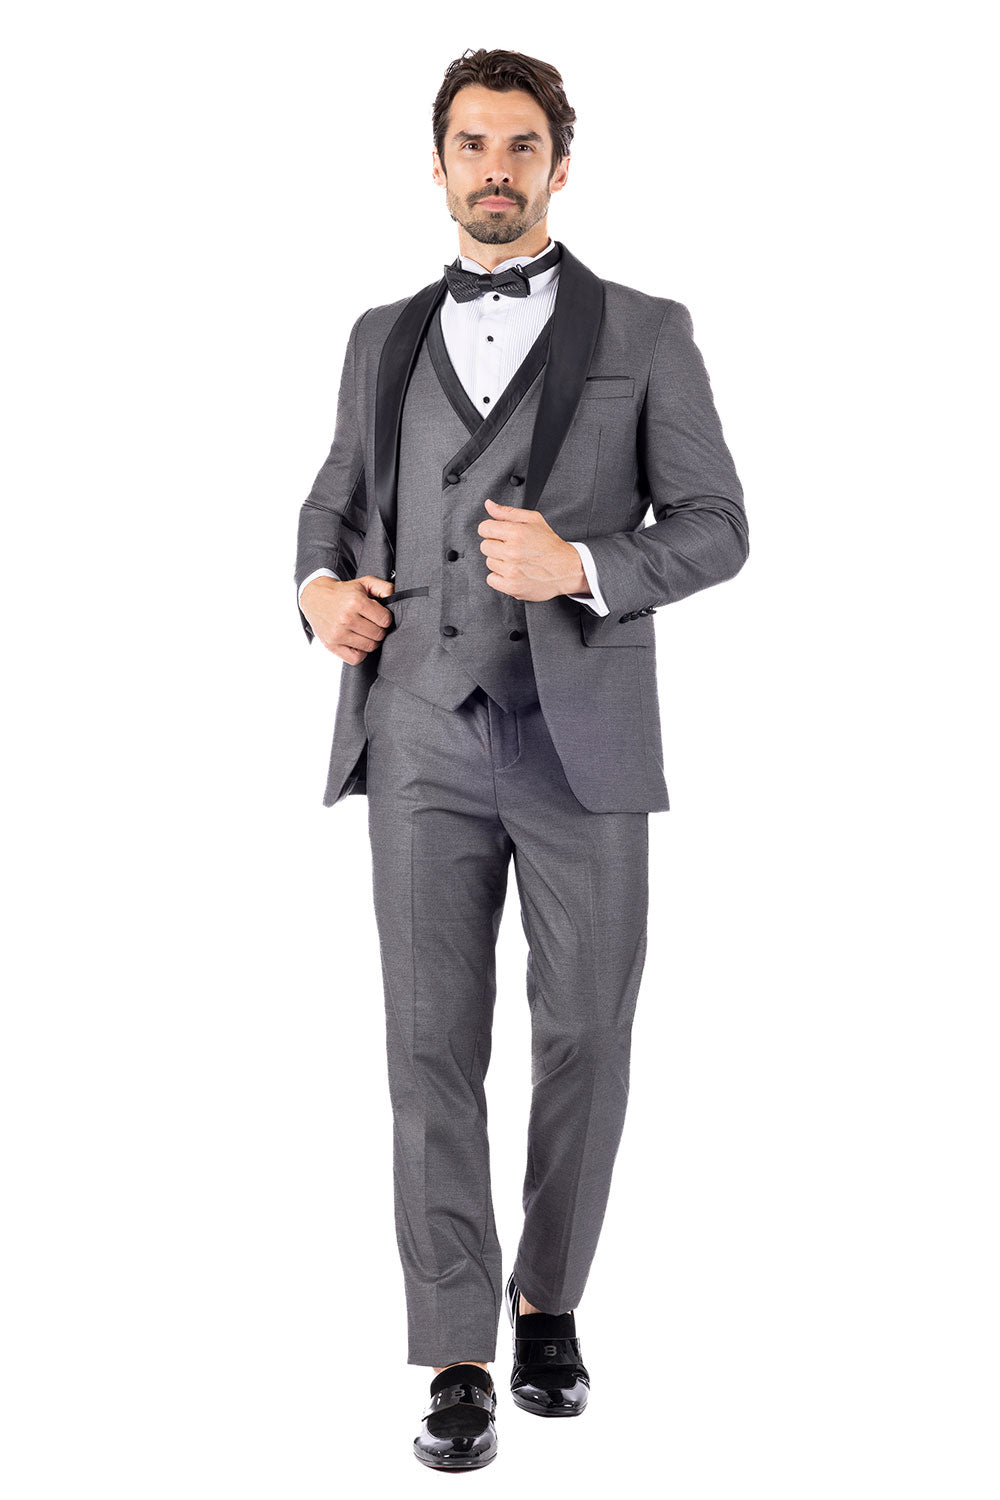 BARABAS Men's Solid Color Shawl Lapel Suit Vest Set 4TU04 Grey